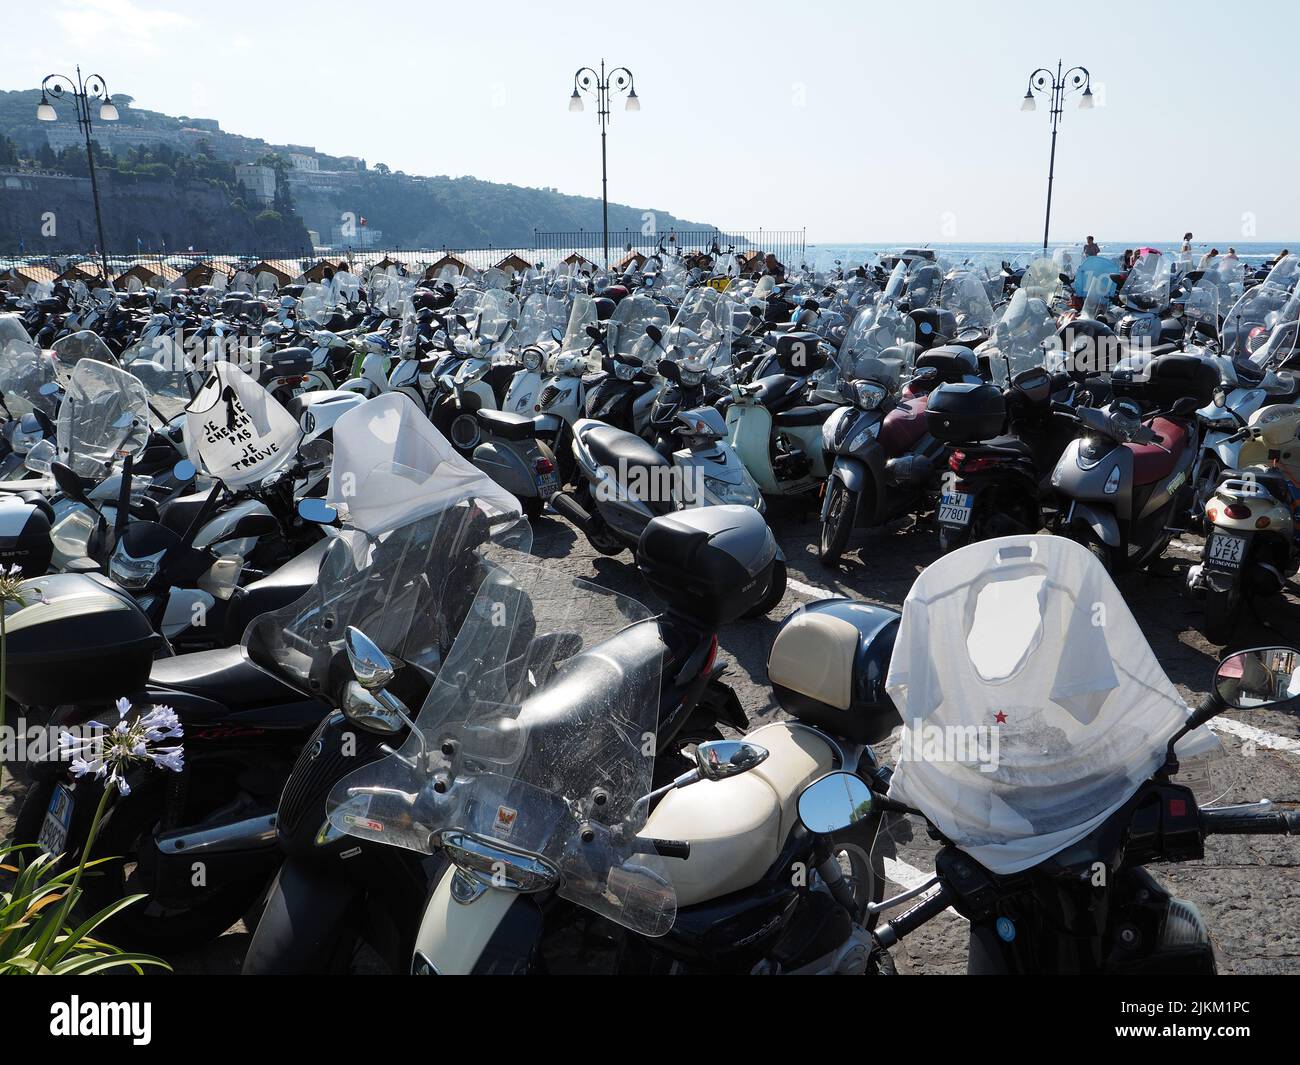 Les scooters sont très populaires en Italie, il s'agit d'un parking pour scooter à Sorrente, Campanie, Italie Banque D'Images